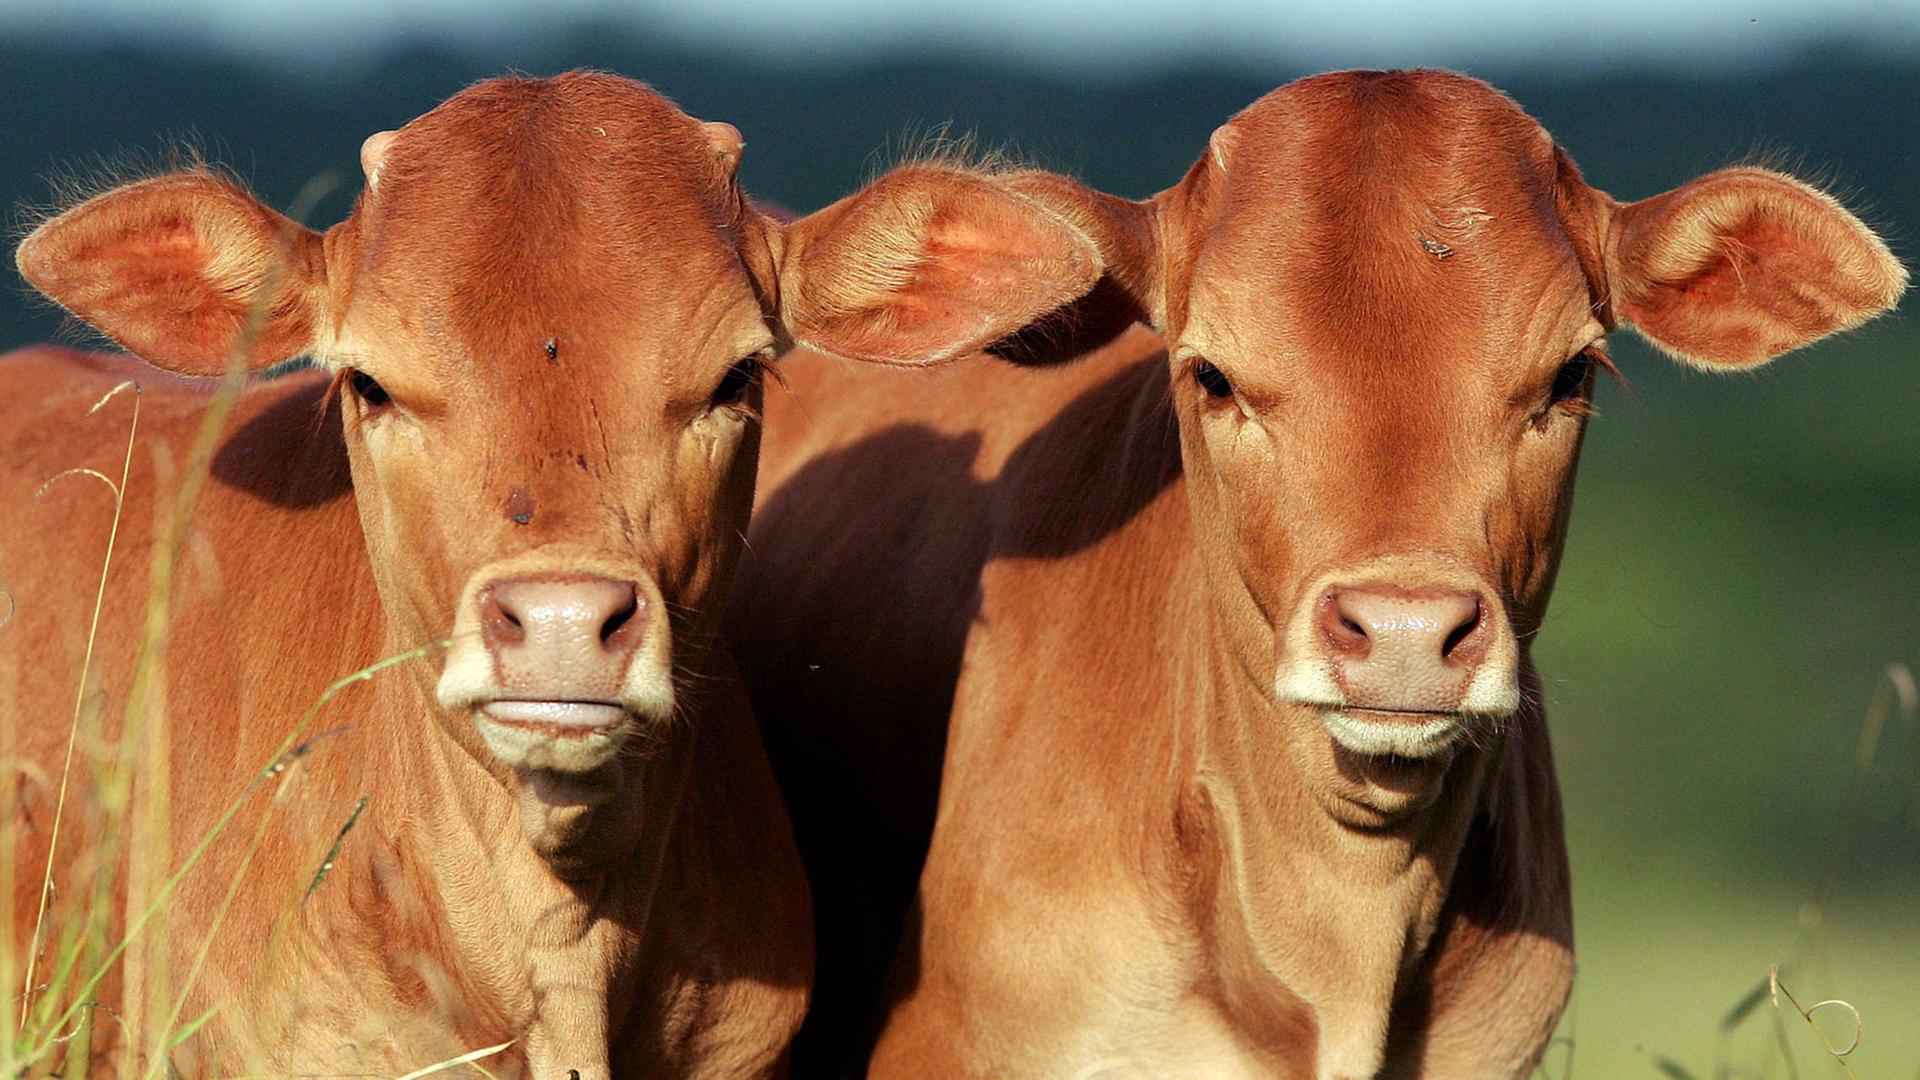 Die von einer Kuh im Rahmen des Conservation and Use of Genetical Animals Program of Embrapa geklonten Kälber Pora und Potira, aufgenommen am 22.05.2005 in Brasilia. ITS PRESS / Pablo Valadares +++(c) dpa - Report+++